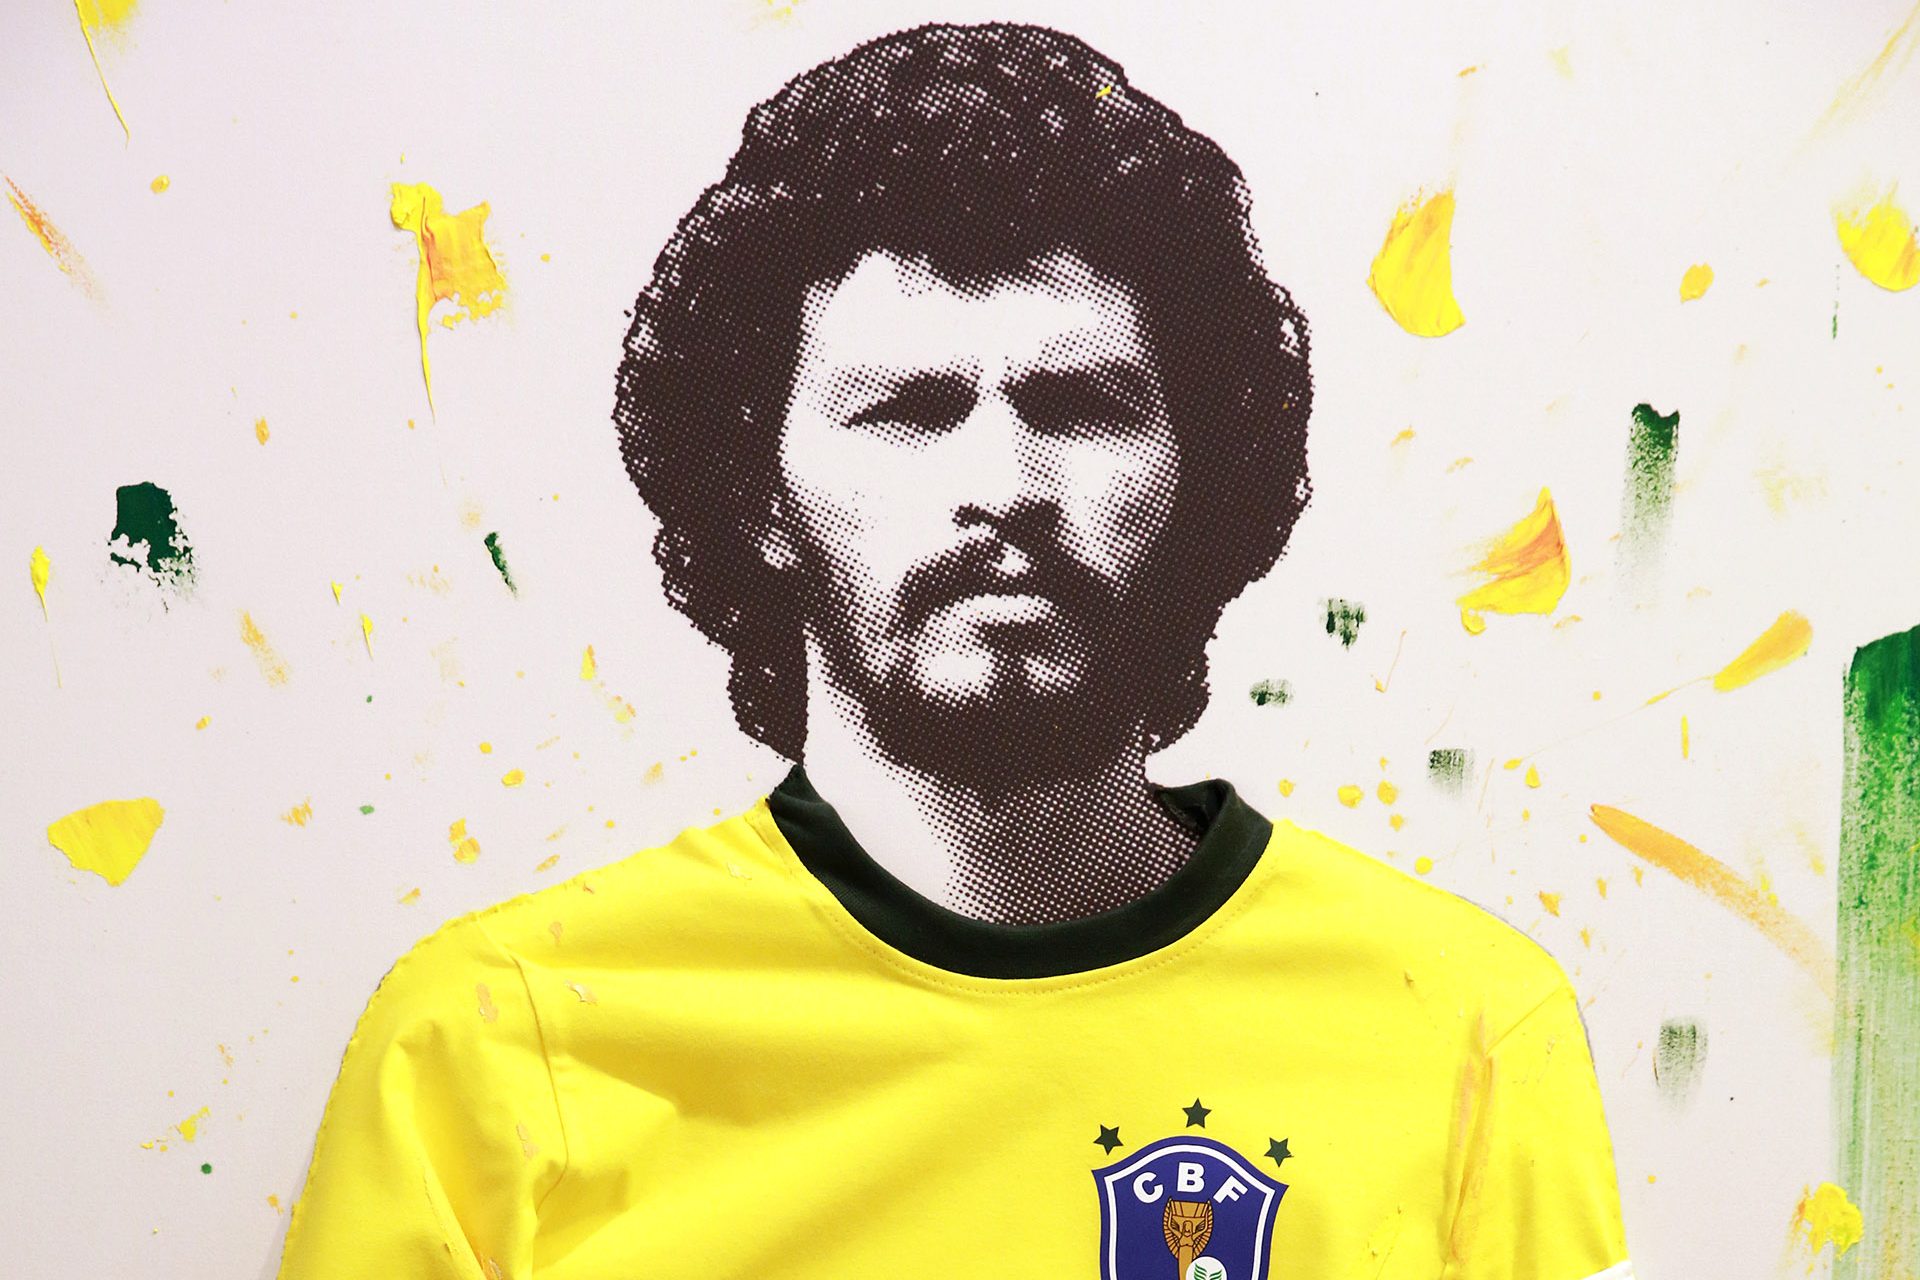 El futbolista que luchó contra una dictadura: la historia de Sócrates